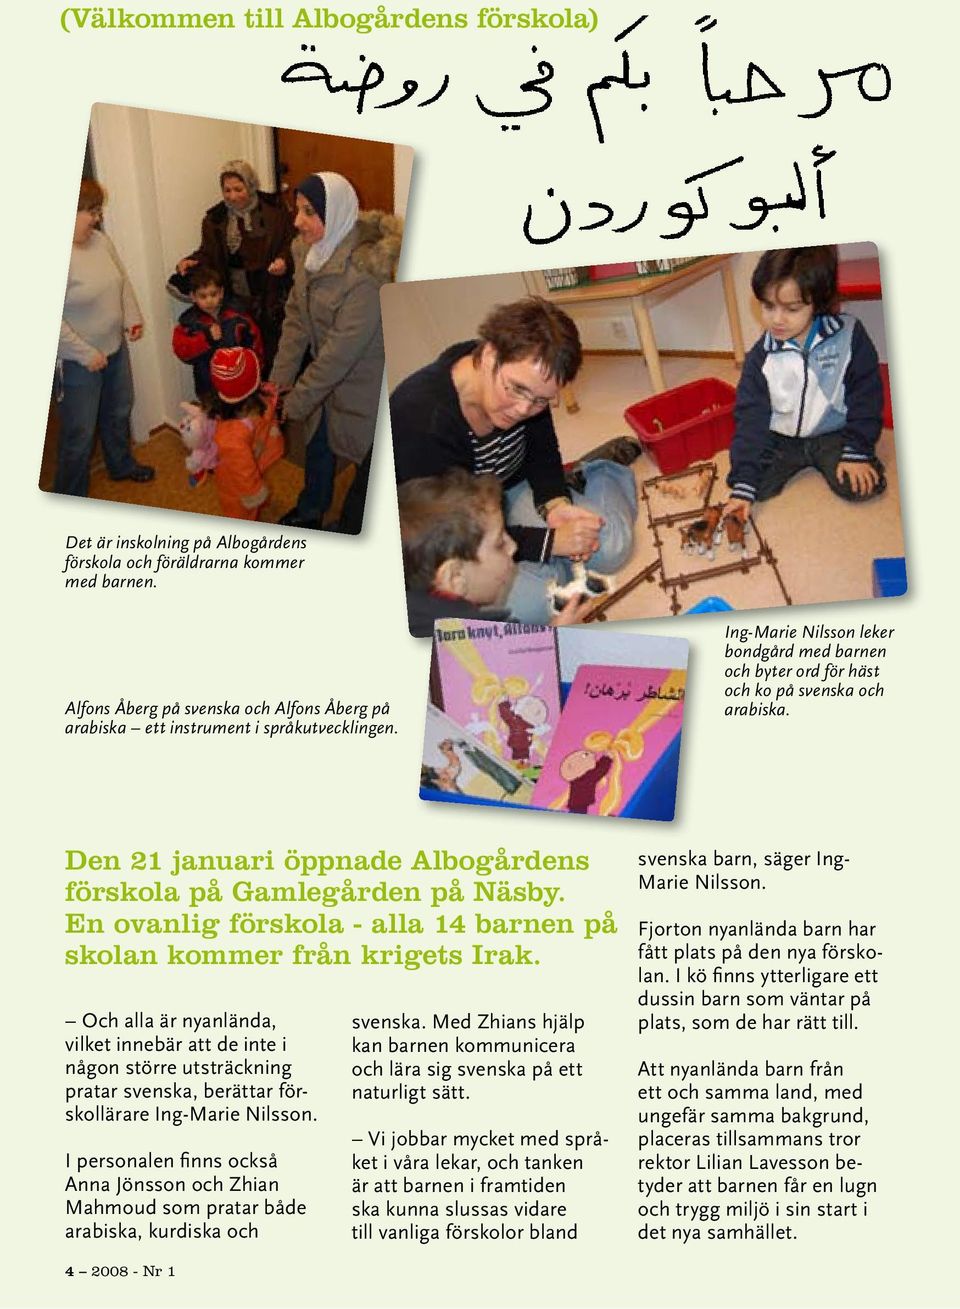 Den 21 januari öppnade Albogårdens förskola på Gamlegården på Näsby. En ovanlig förskola - alla 14 barnen på skolan kommer från krigets Irak.